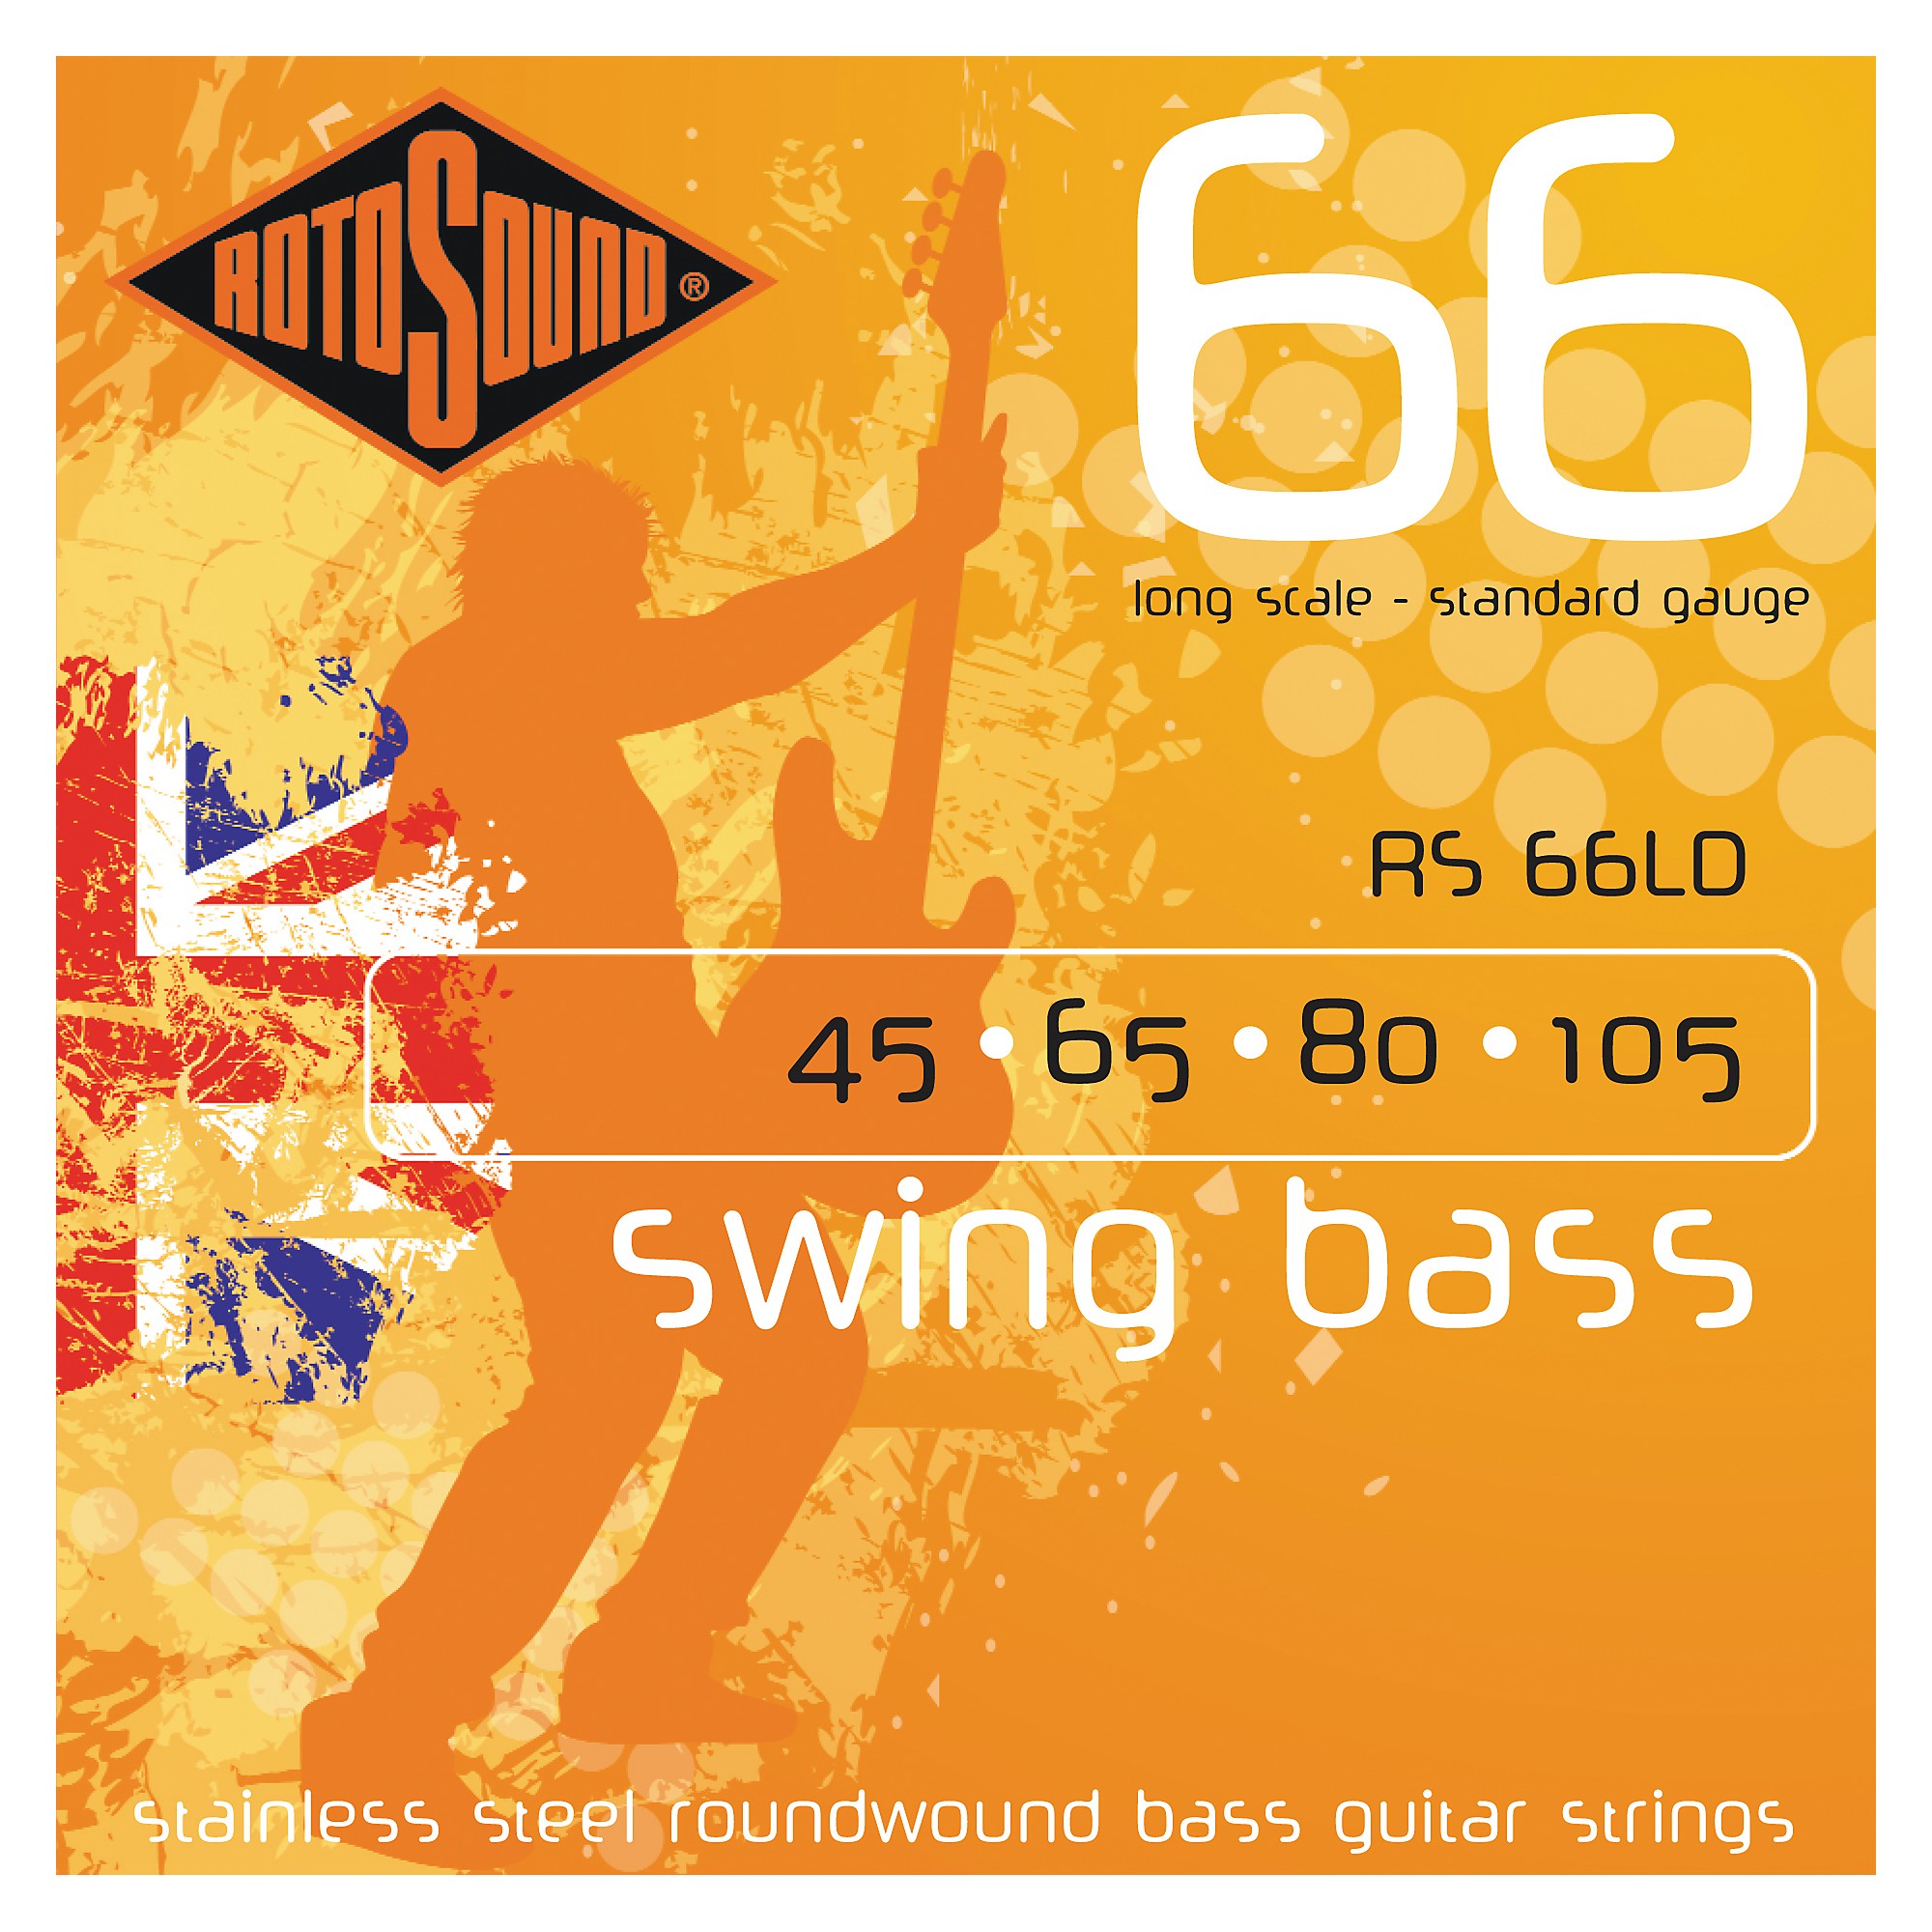 Rotosound Swing Bass 66 LD 